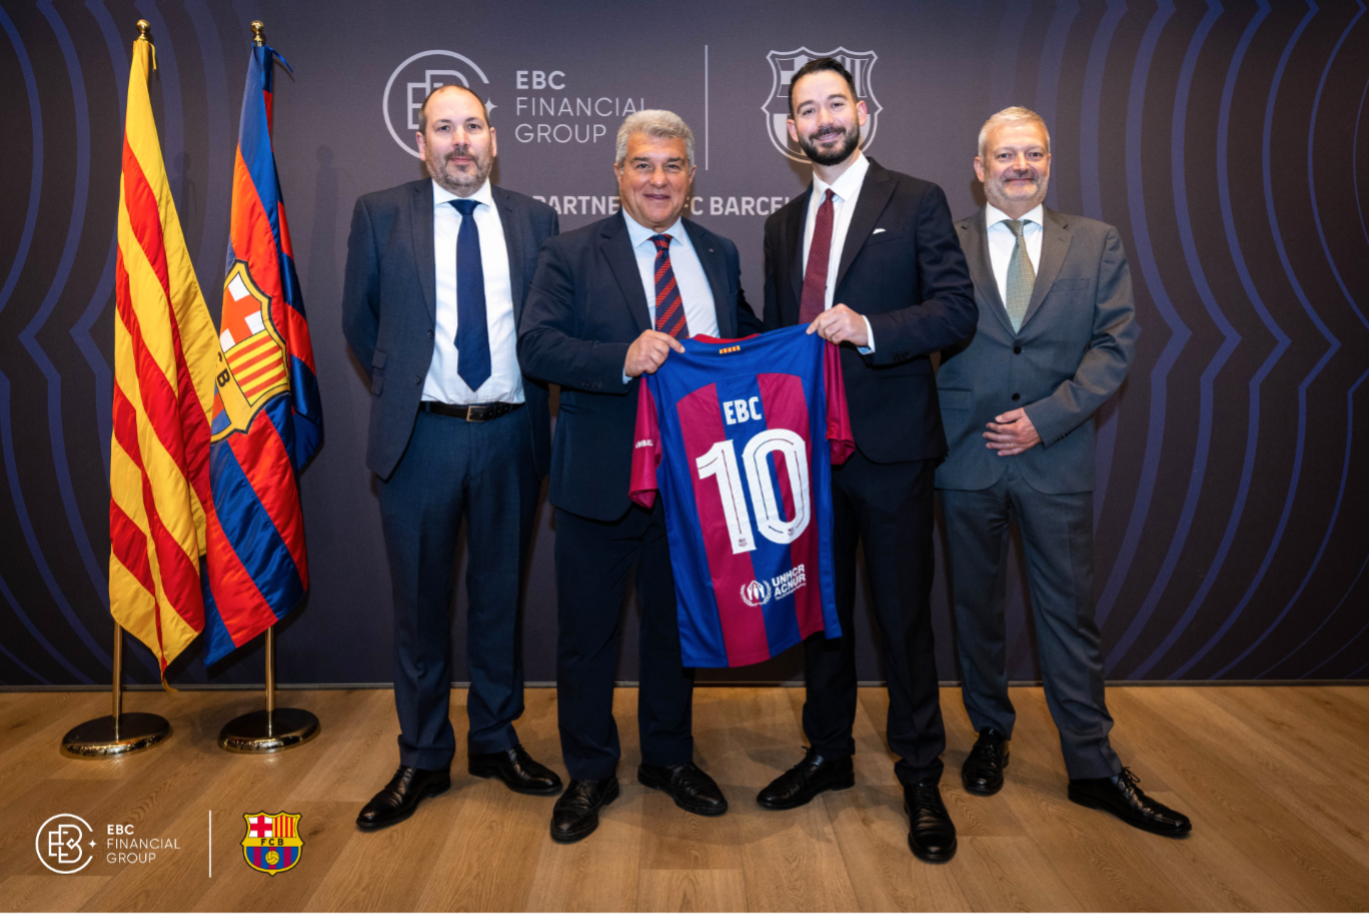 EBC Financial Group dan FC Barcelona, bersama dengan Presiden Joan Laporta, merayakan penyatuan keuangan dan sepakbola dengan pertukaran jersey seremonial.